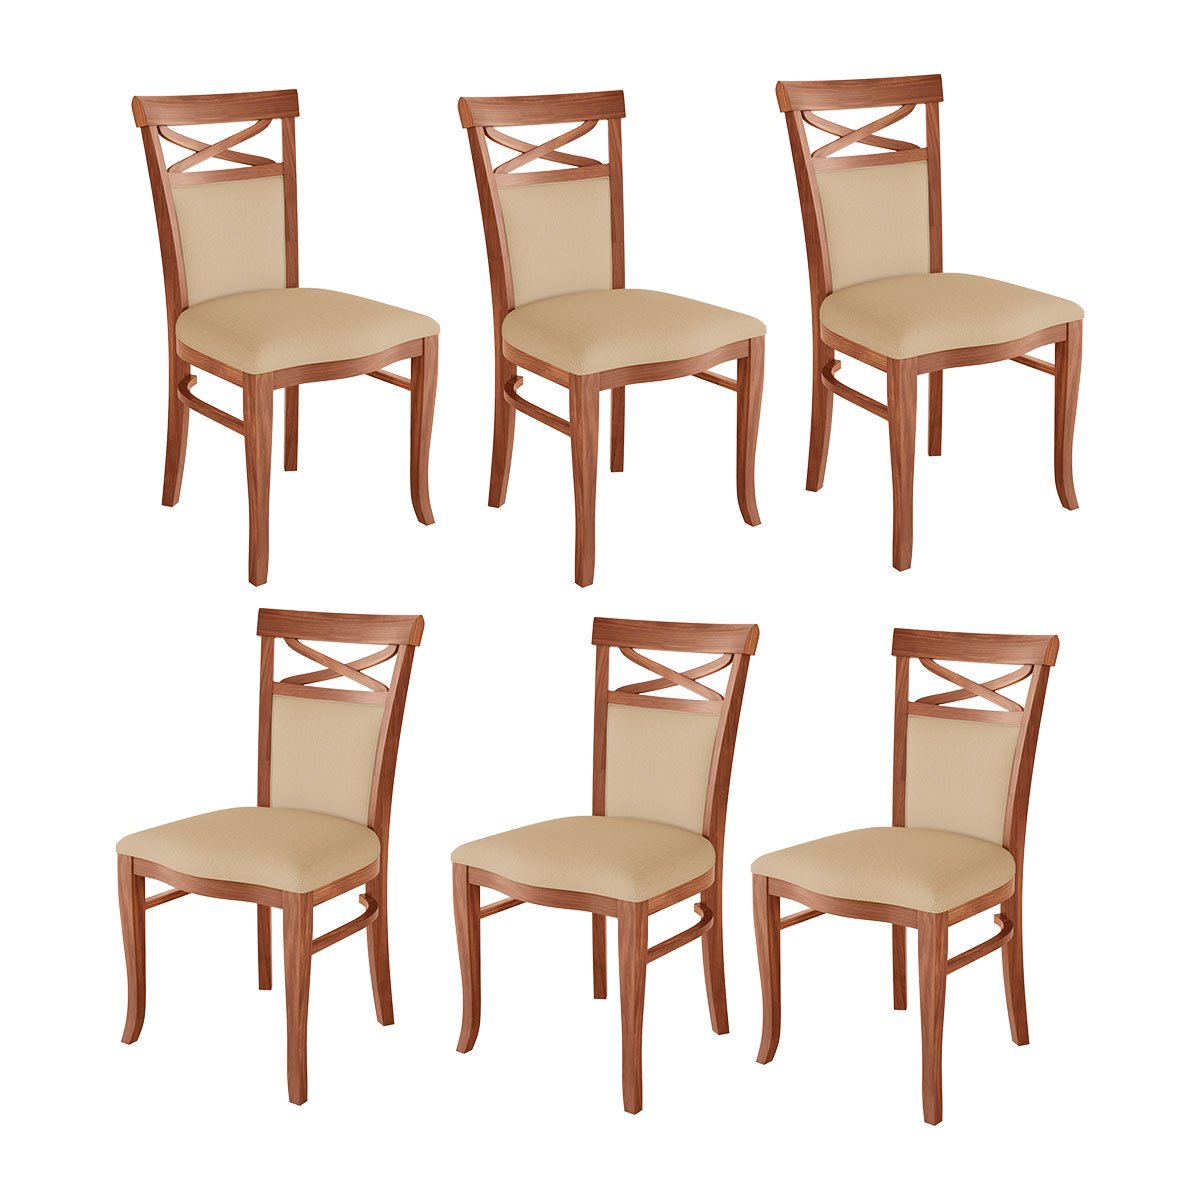 Kit 6 Cadeiras de Jantar Estofada Copacabana 48 x 100 Cm Madeira Maciça Imbuia Linho Bege M43 - RMI